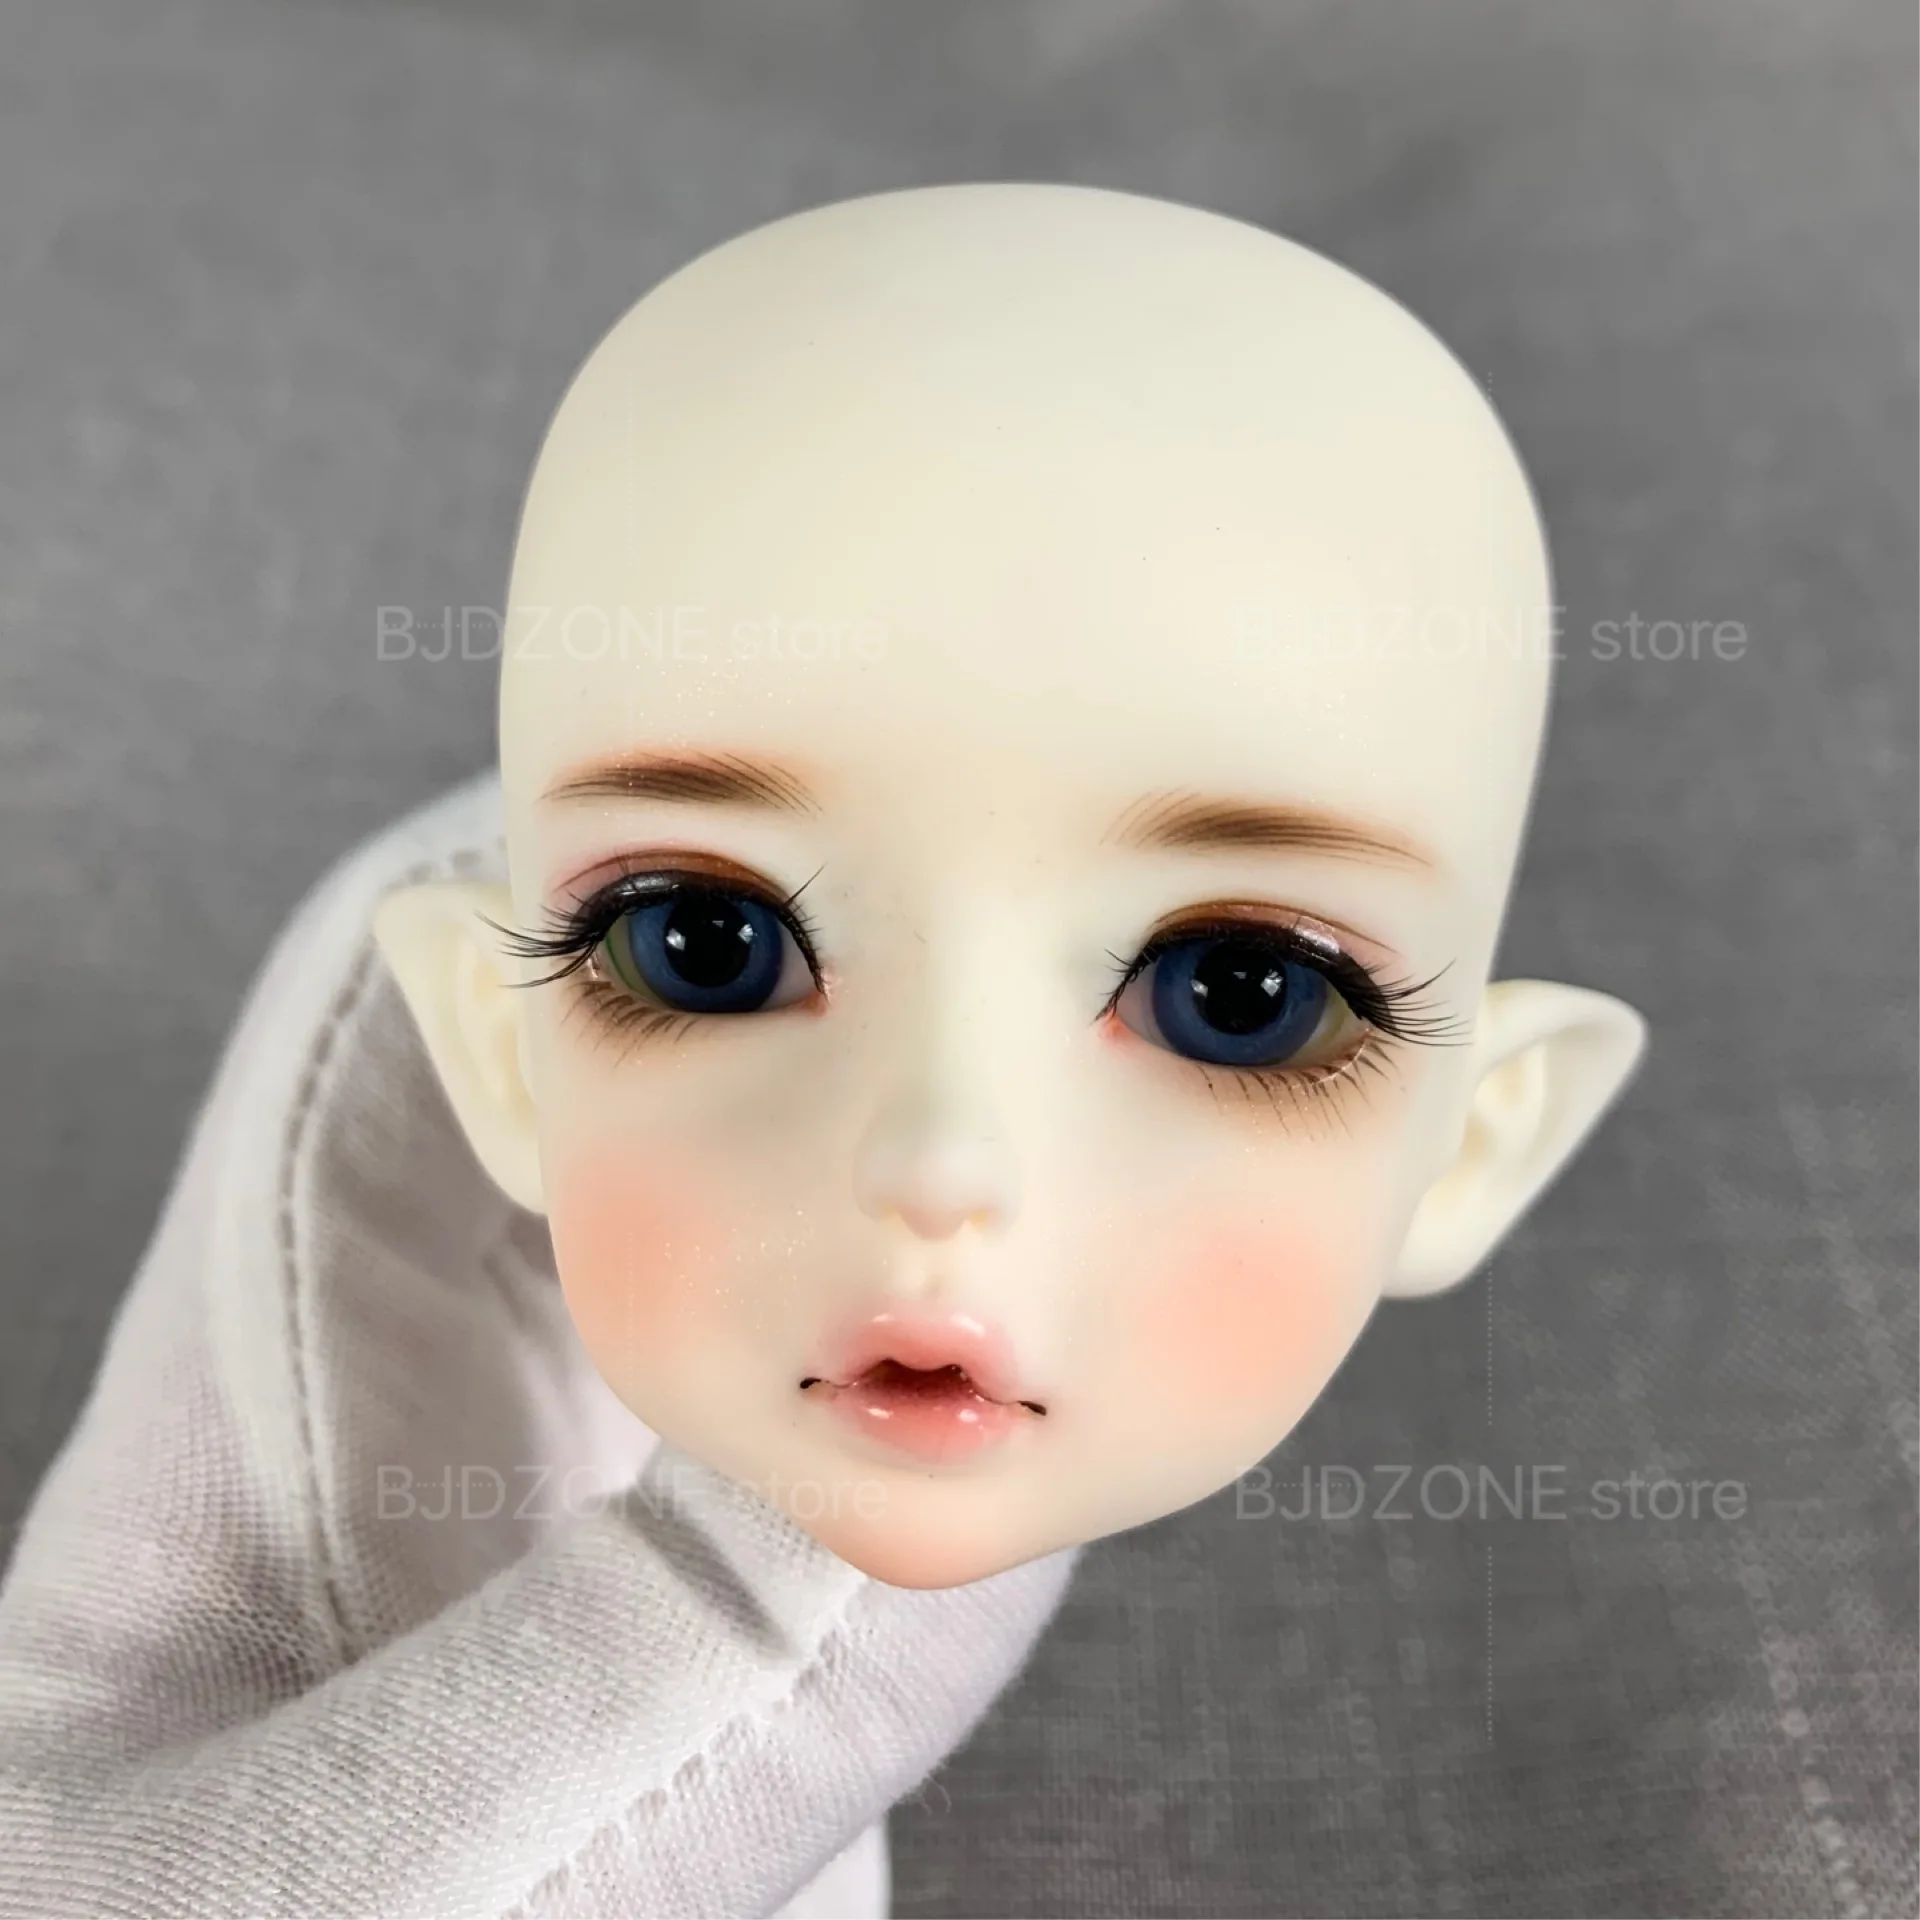 BJD милая девочка милый мальчик кукла Komat Ior 1/4 Размер человеческая версия подарок на день рождения Рождественский подарок для детей